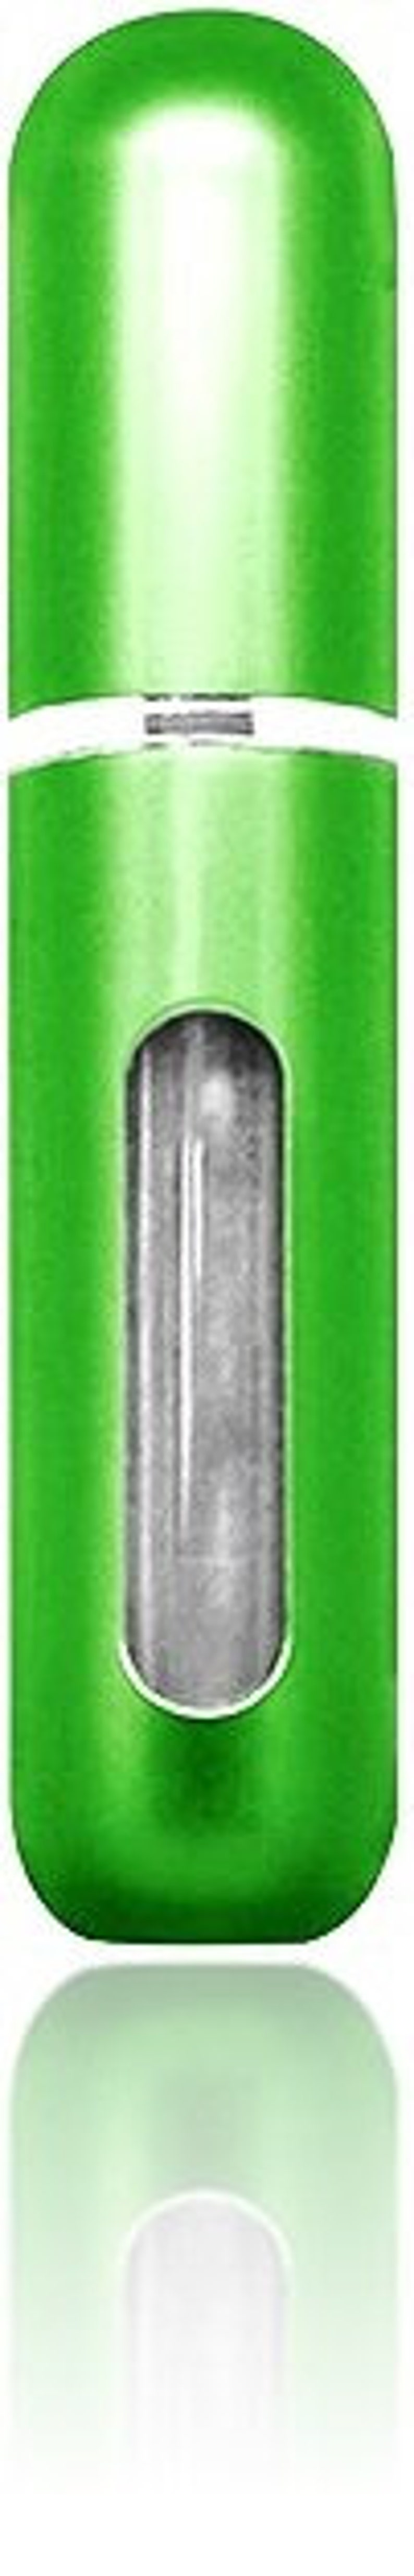 Nachfüllbare Parfüm Aftershave Zerstäuber 5 ml Spray Pump Portable Flaschen Ideal für die Reise Kann BLACK & GOLD Personalisiert werden Chrome Green